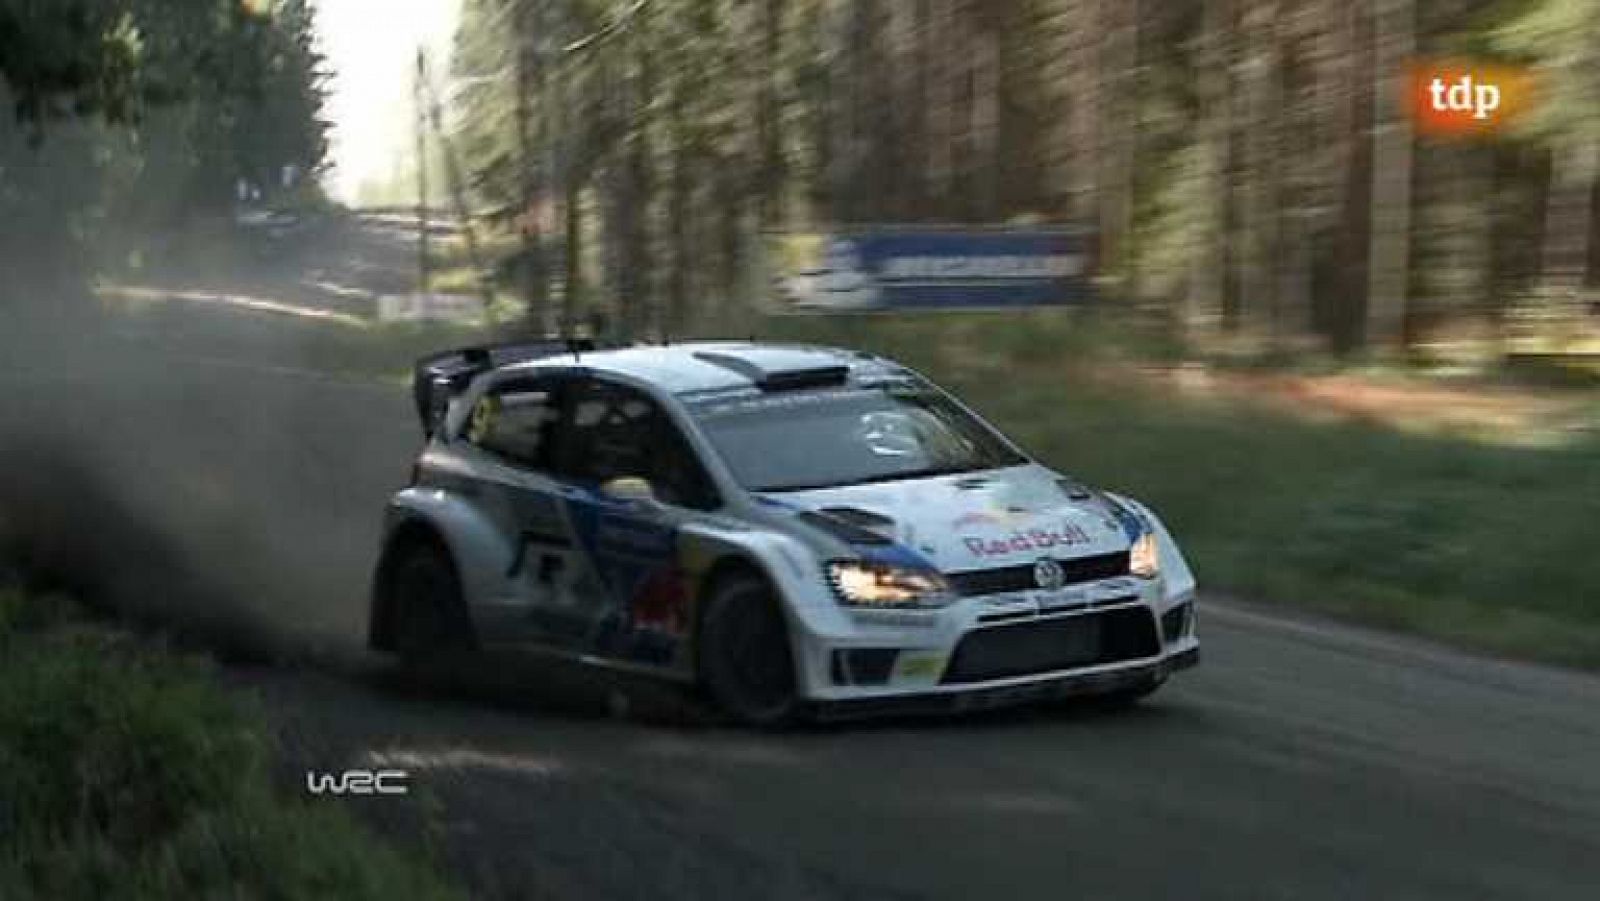 Automovilismo - WRC Campeonato del mundo: Rally Finlandia - Resumen 2ª jornada